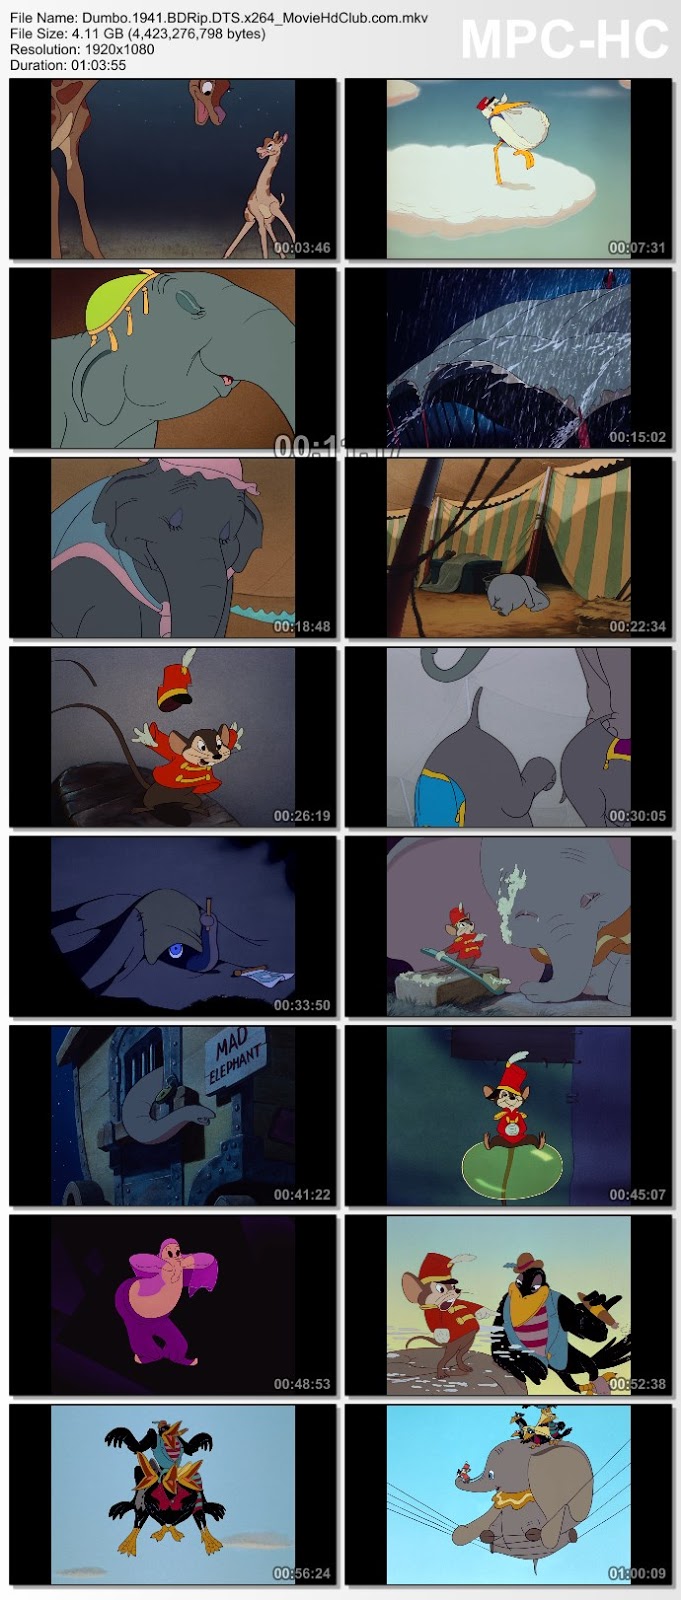 [Mini-HD] Dumbo (1941) 70th Anniversary - ดัมโบ้ ฉบับครบรอบ 70 ปี [1080p][เสียง:ไทย 5.1/Eng DTS][ซับ:ไทย/Eng][.MKV][4.12GB] DB_MovieHdClub_SS